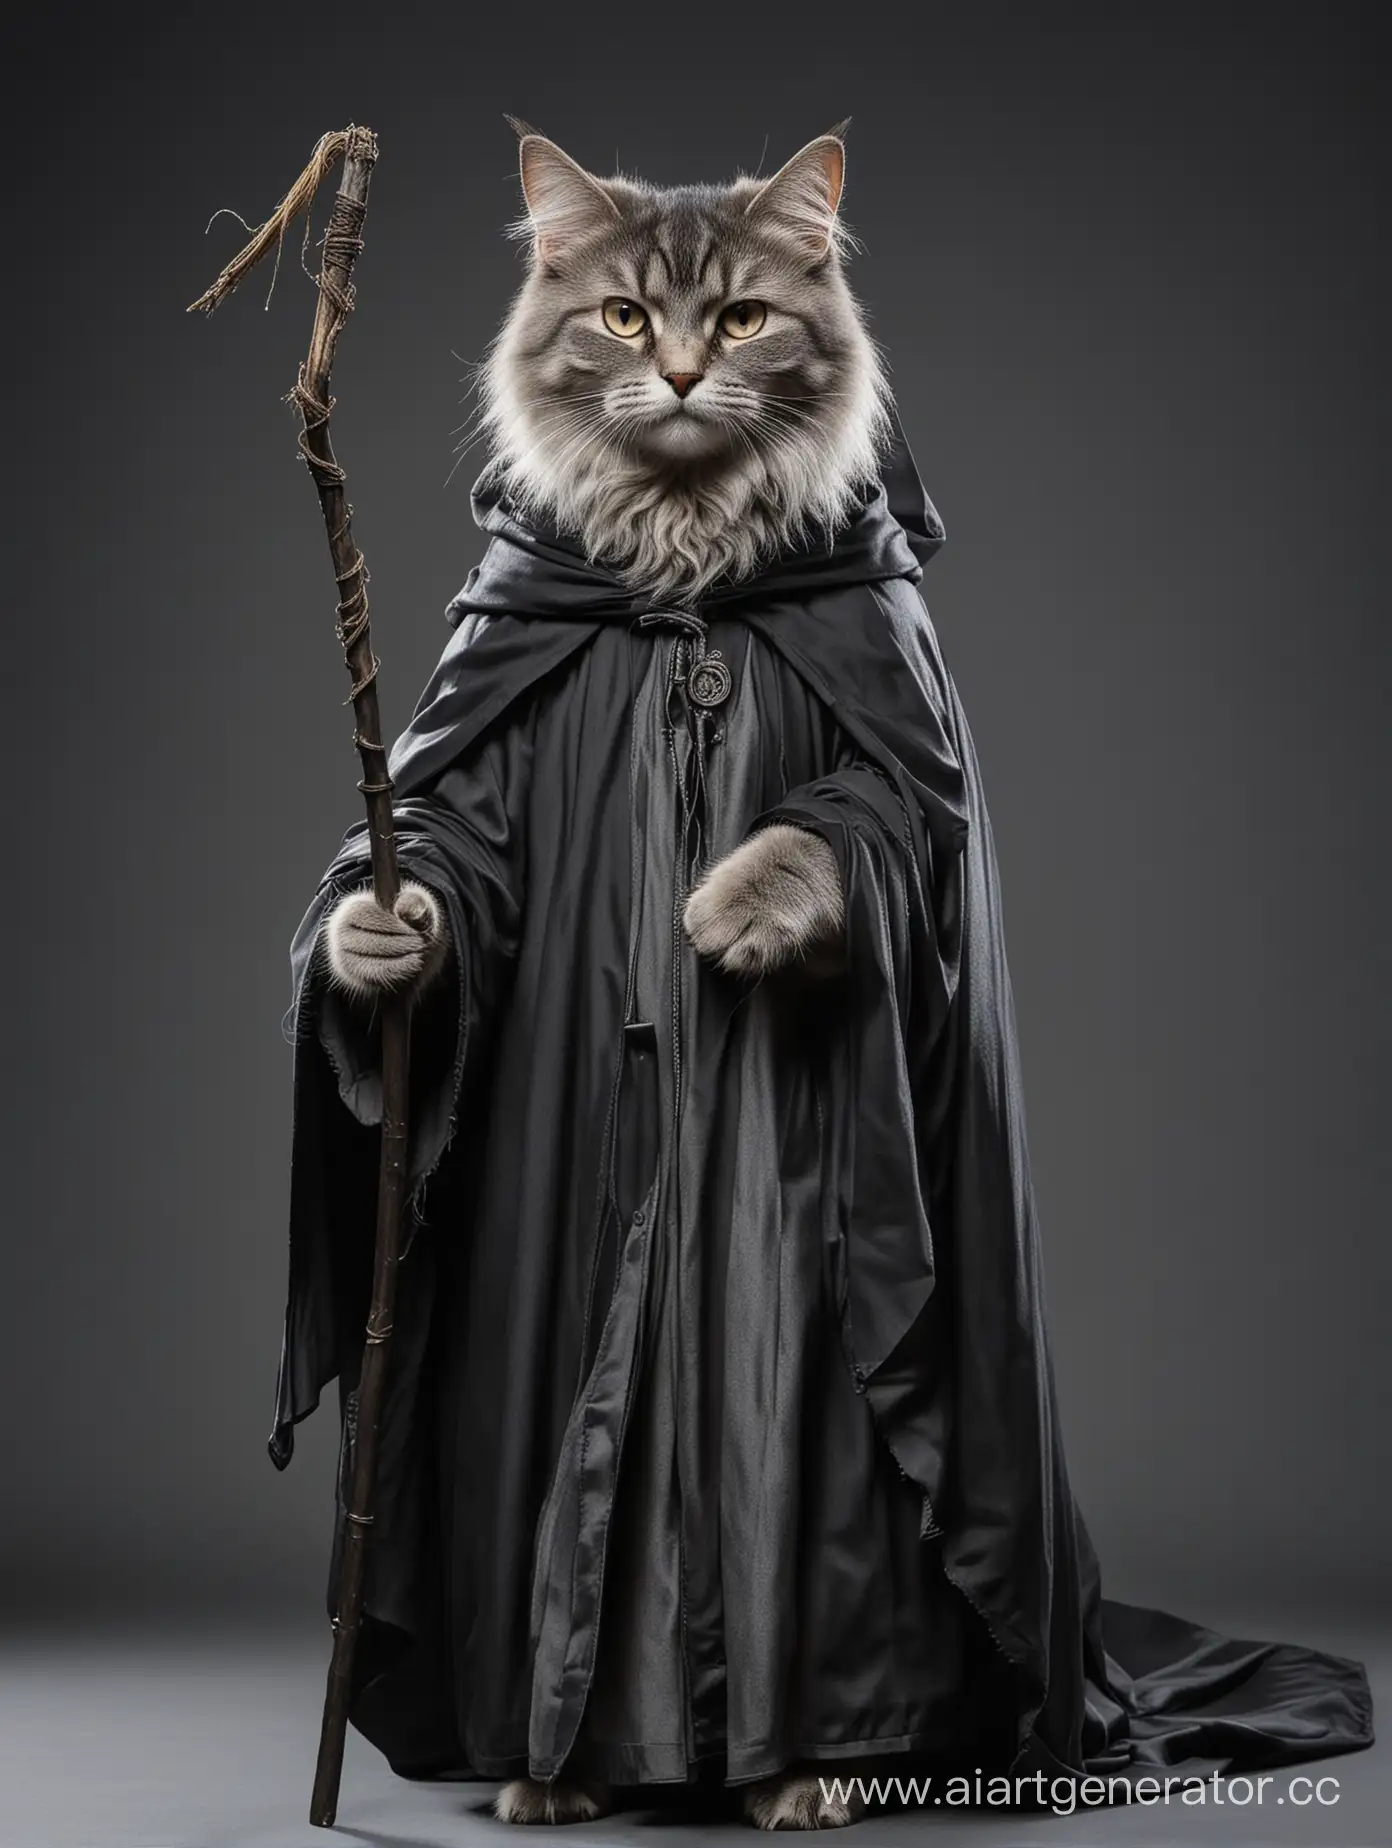 Молодой кошко-люд волшебник рост 150см вес 50кг шерсть серо-черного цвета, держит в руке длинную палку и одет в мантию мага